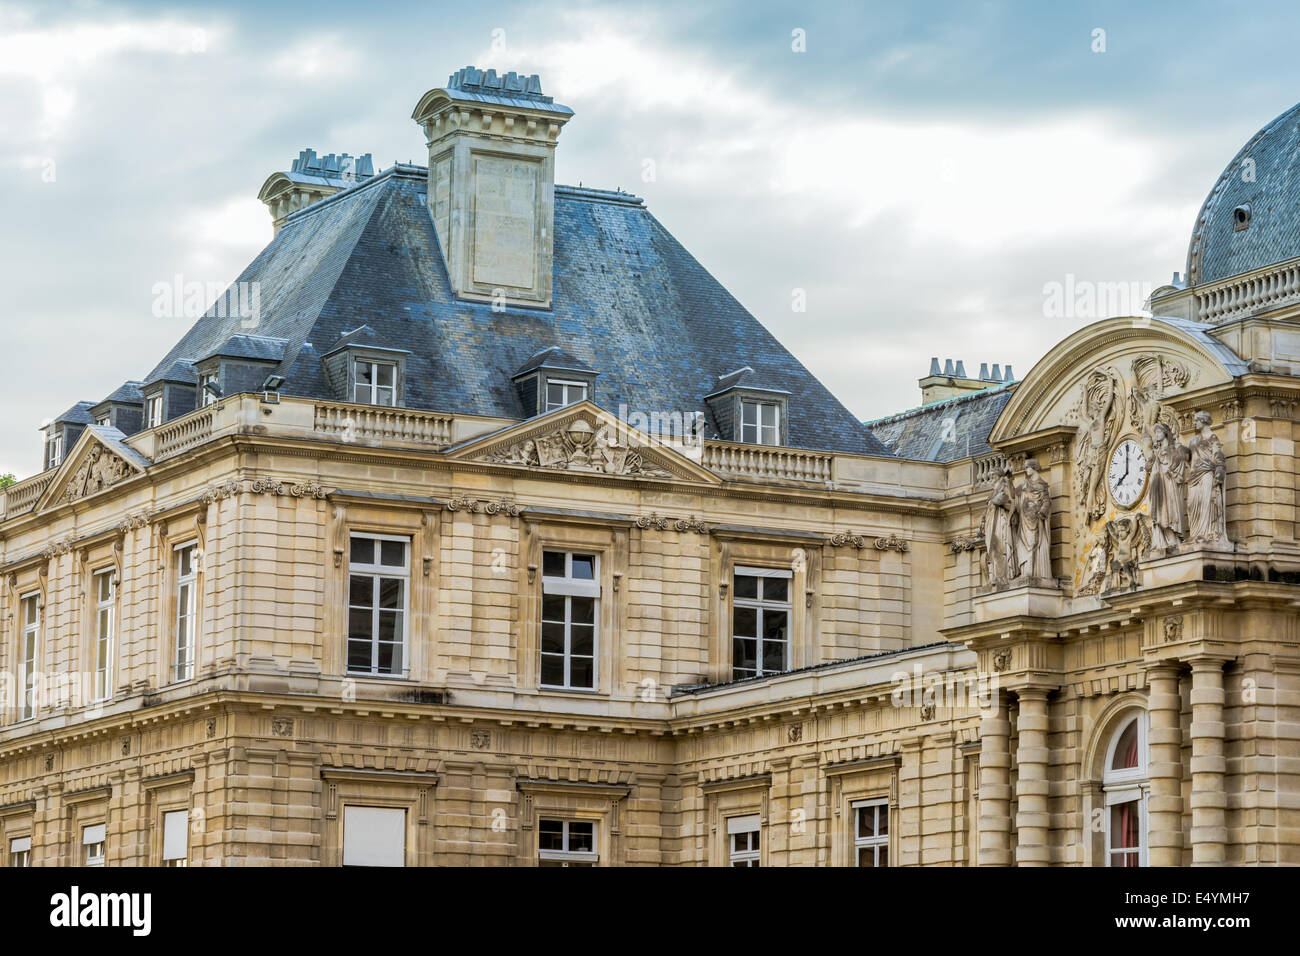 Parigi, Francia - Giugno 7th, 2014: particolare architettonico del museo del Louvre, Parigi, una delle principali attrazioni turistiche in Francia e Foto Stock